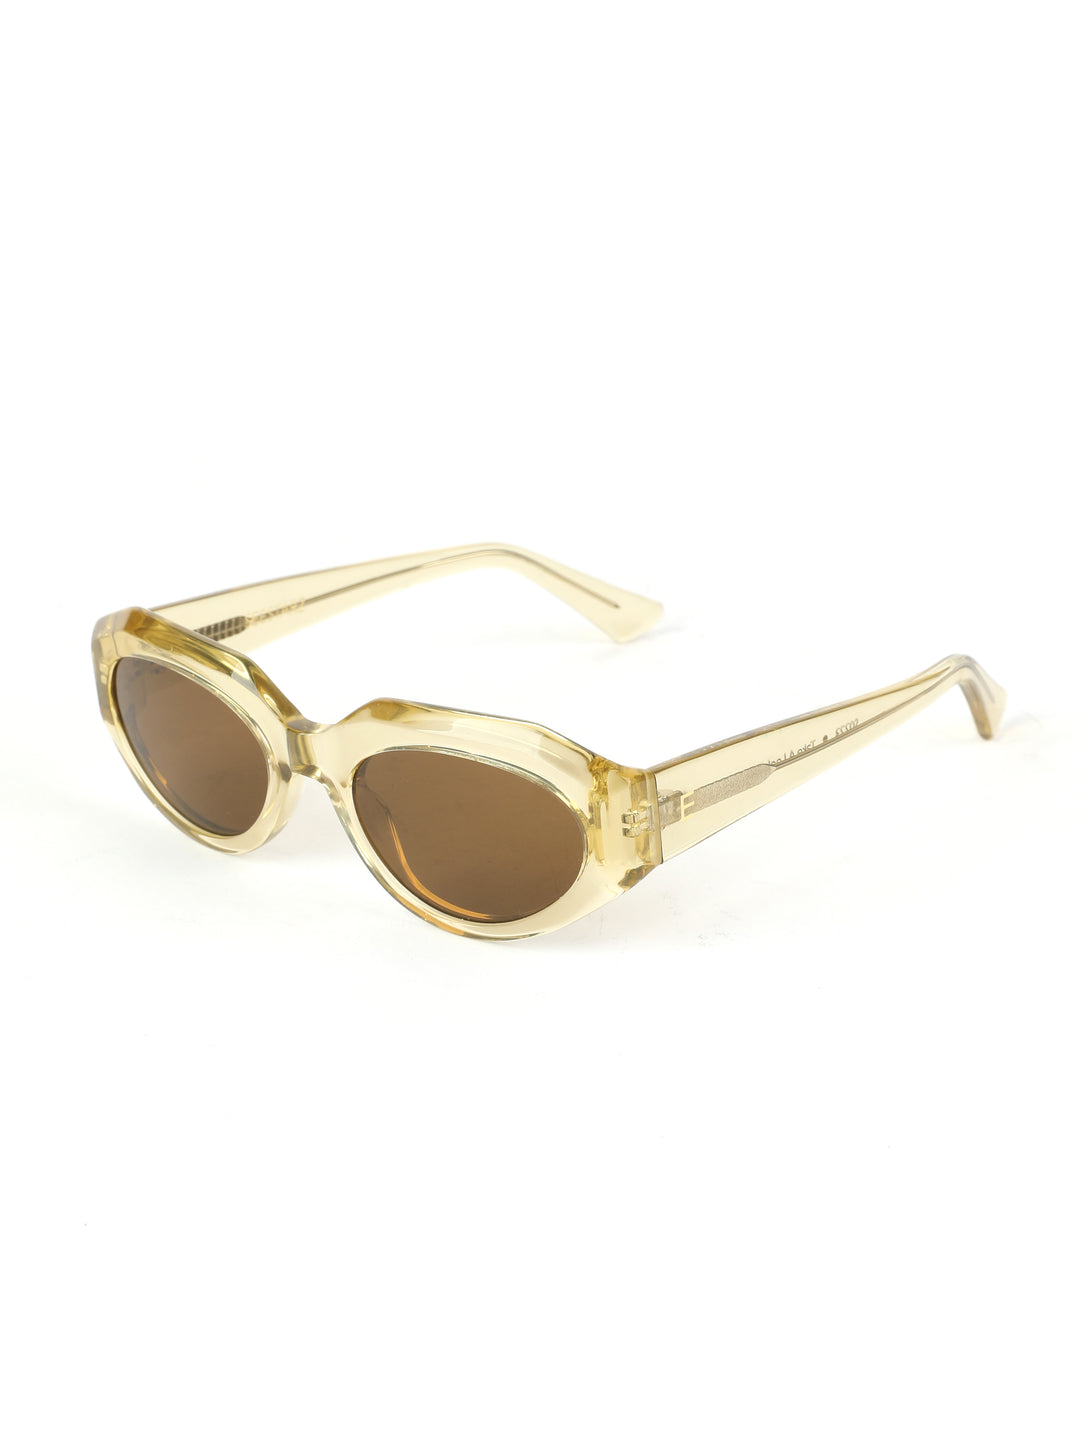 See You No.2 Blonde Sunglasses משקפי שמש מיוחדות בצבע בלונד שקוף 